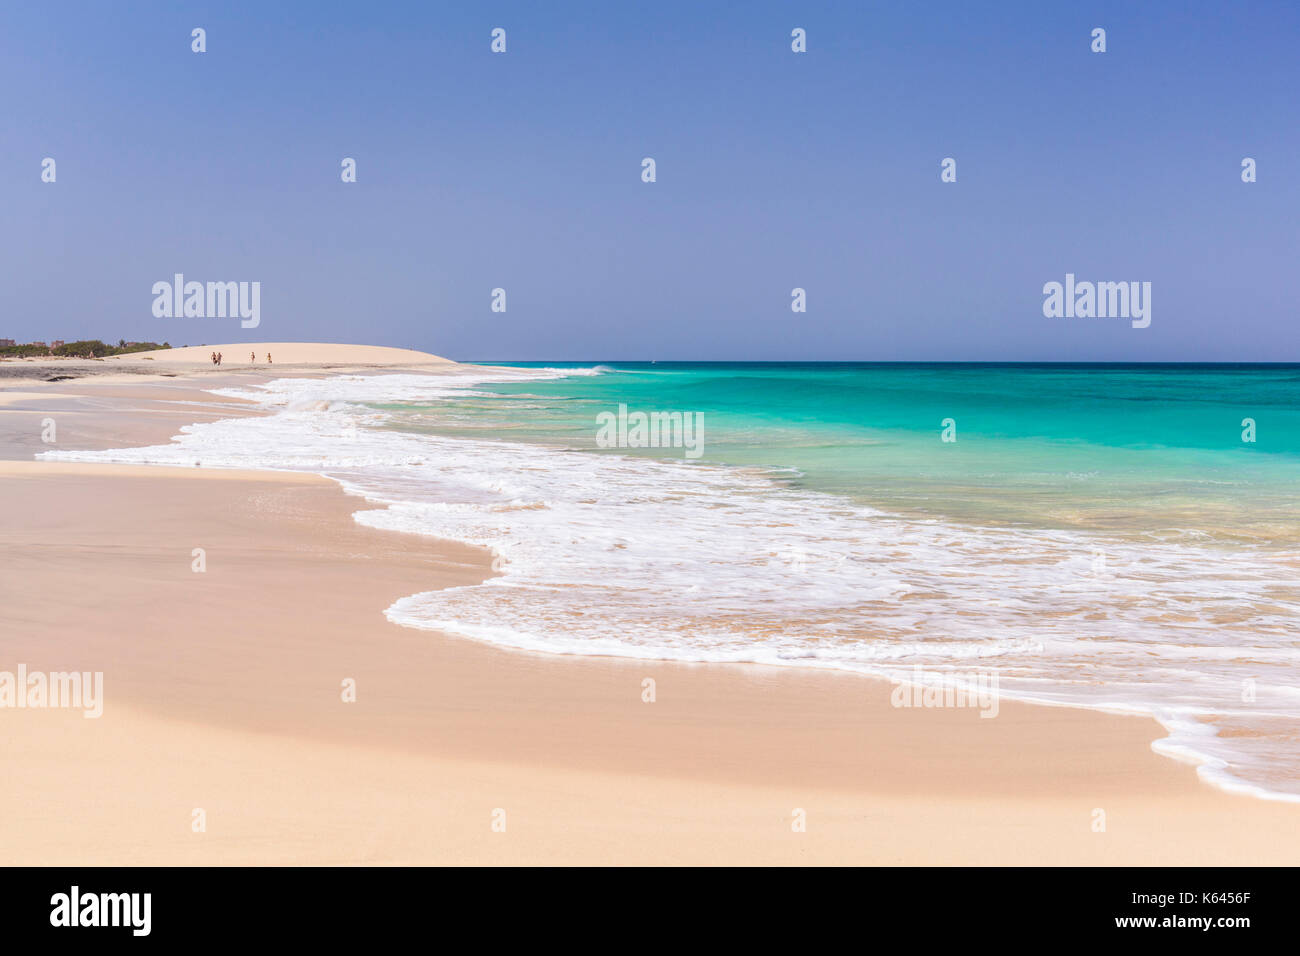 Cap vert SAL scène de plage vide - le vide de la mer bleue et de sable blanc à Ponta Preta beach près de santa maria l'île de Sal Cap vert afrique Banque D'Images